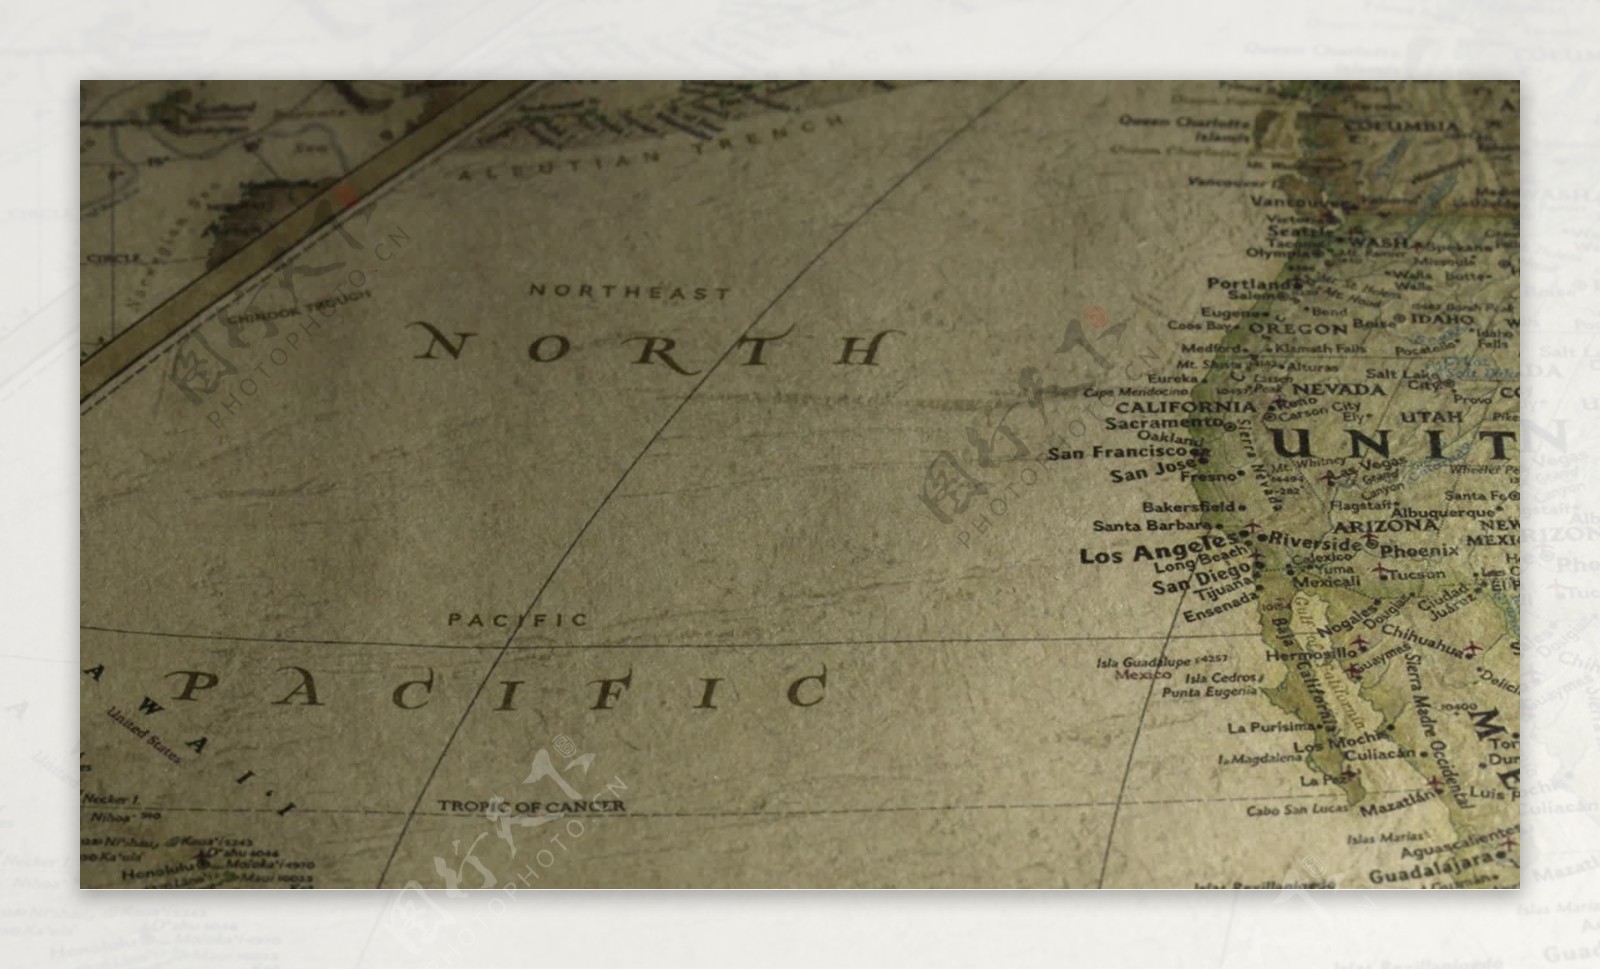 古董地图平移北太平洋